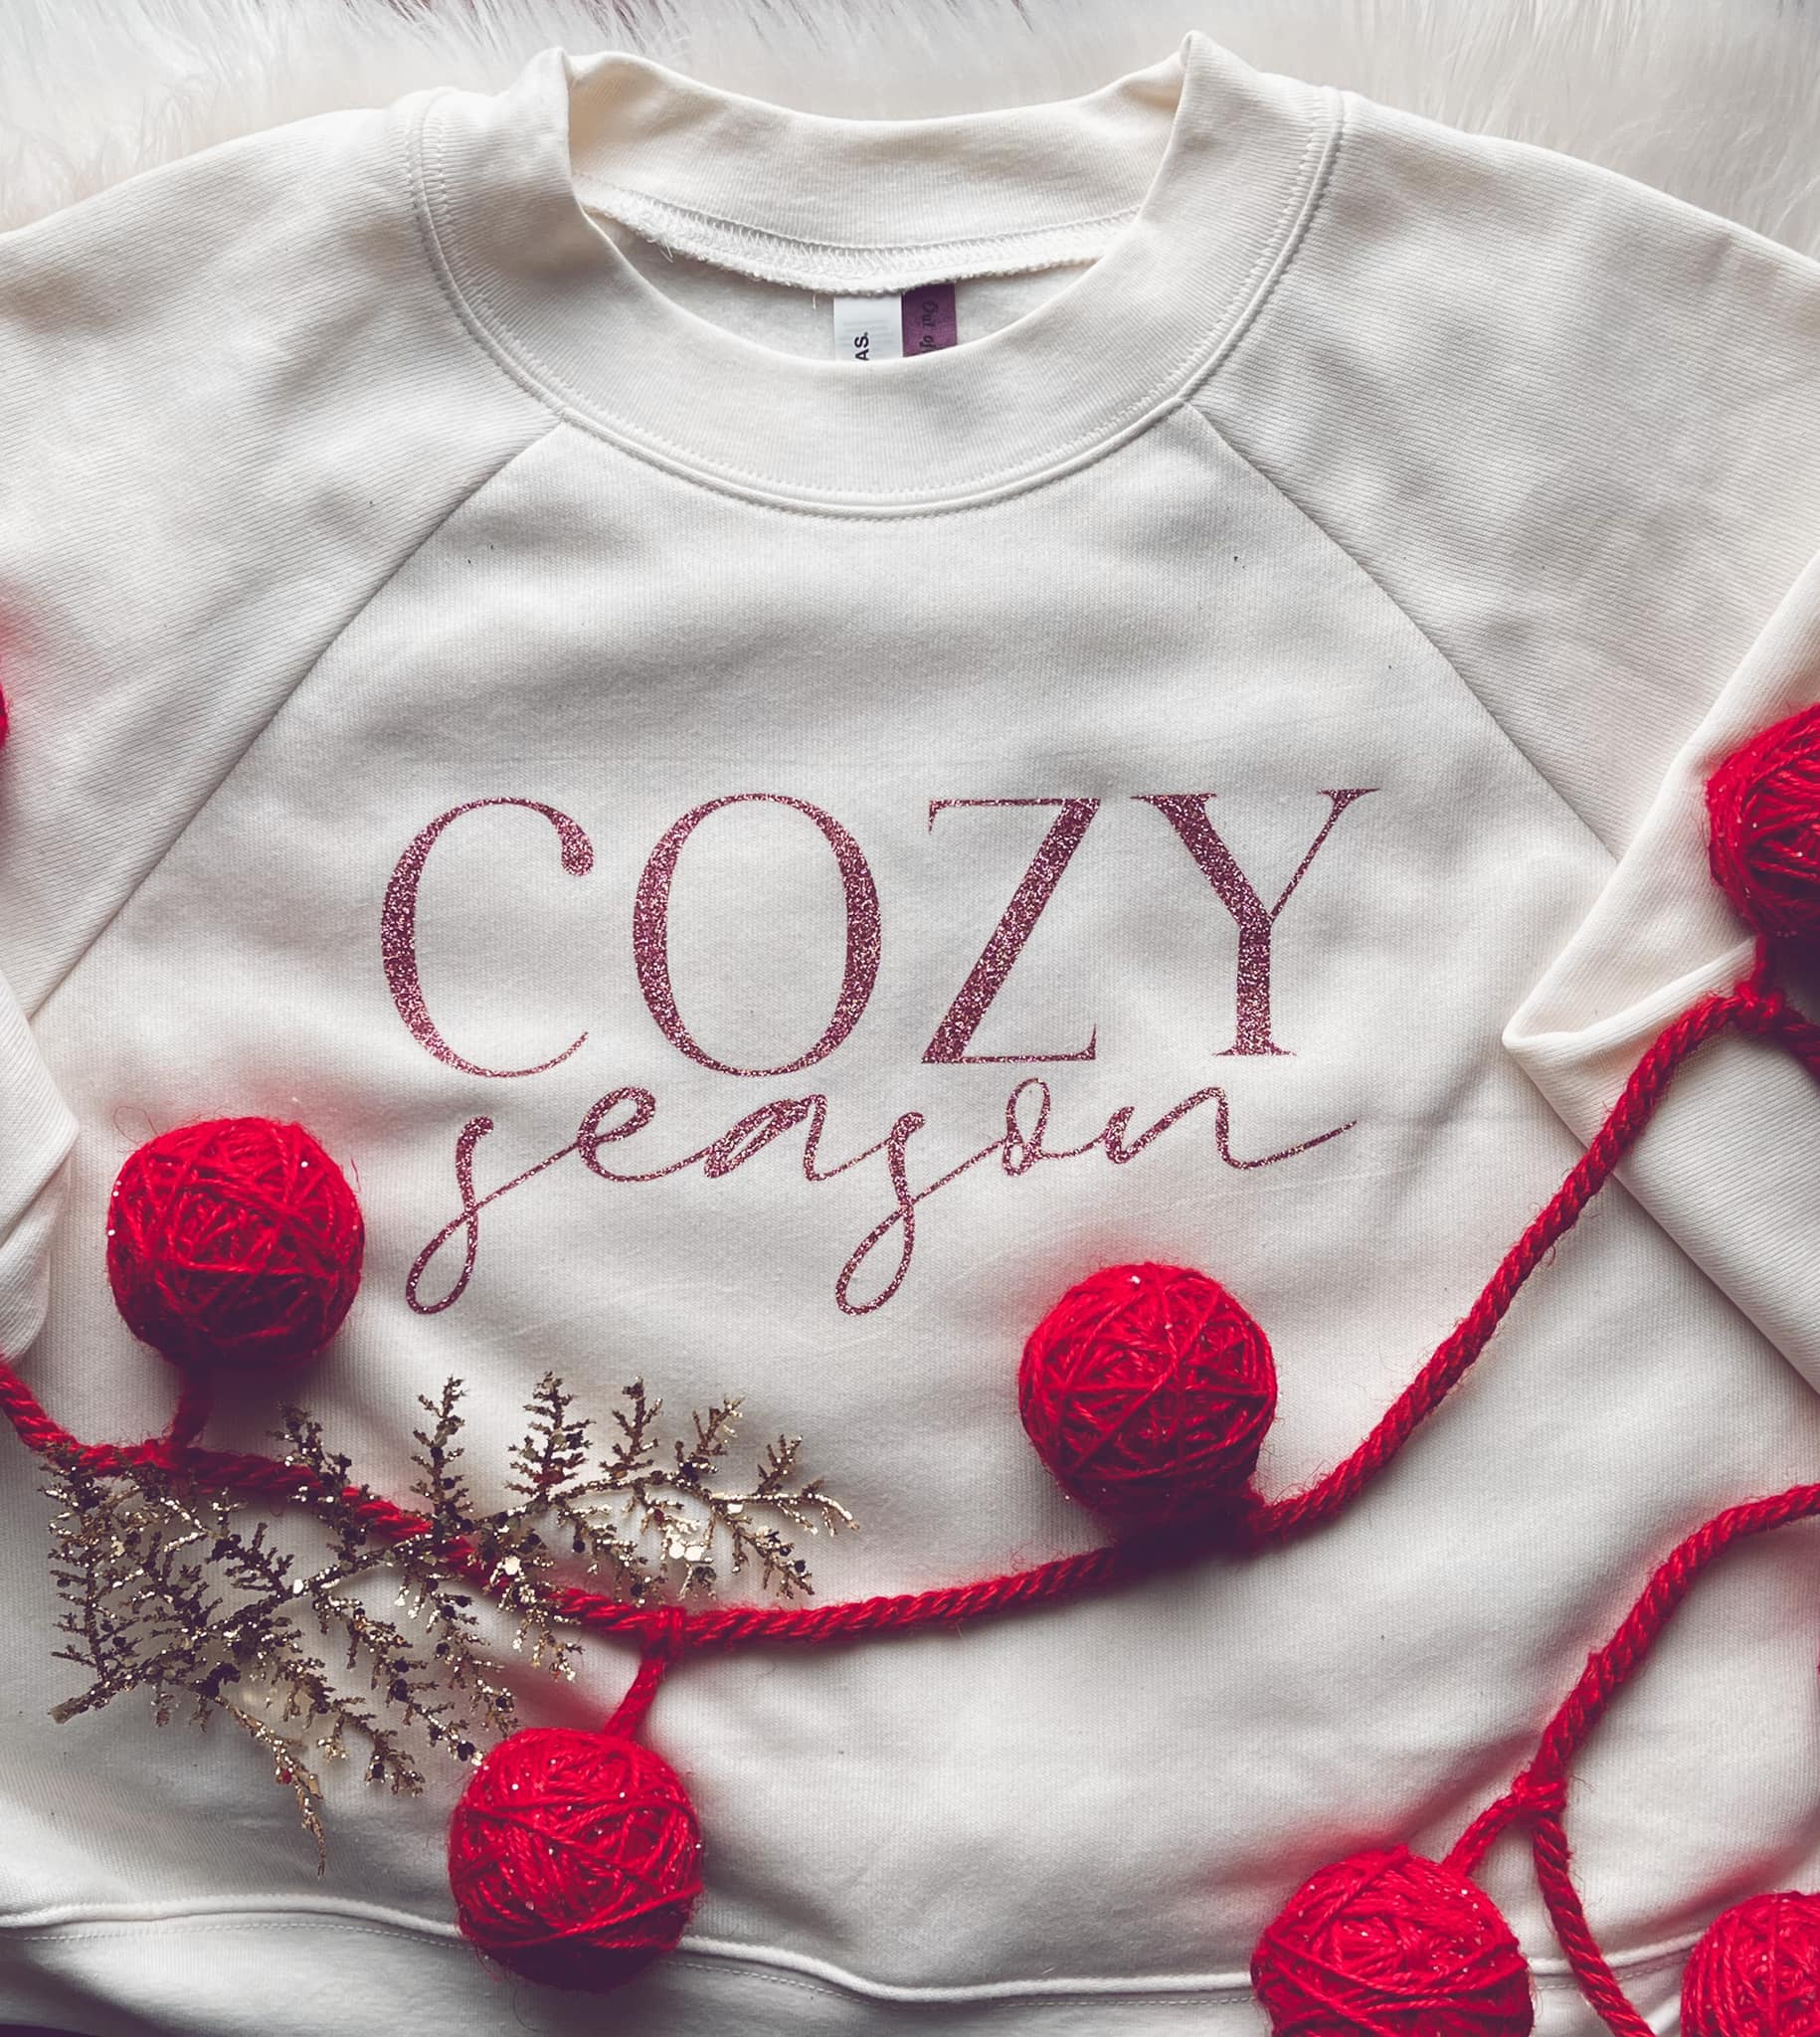 Cozy Season (SWEATSHIRT)